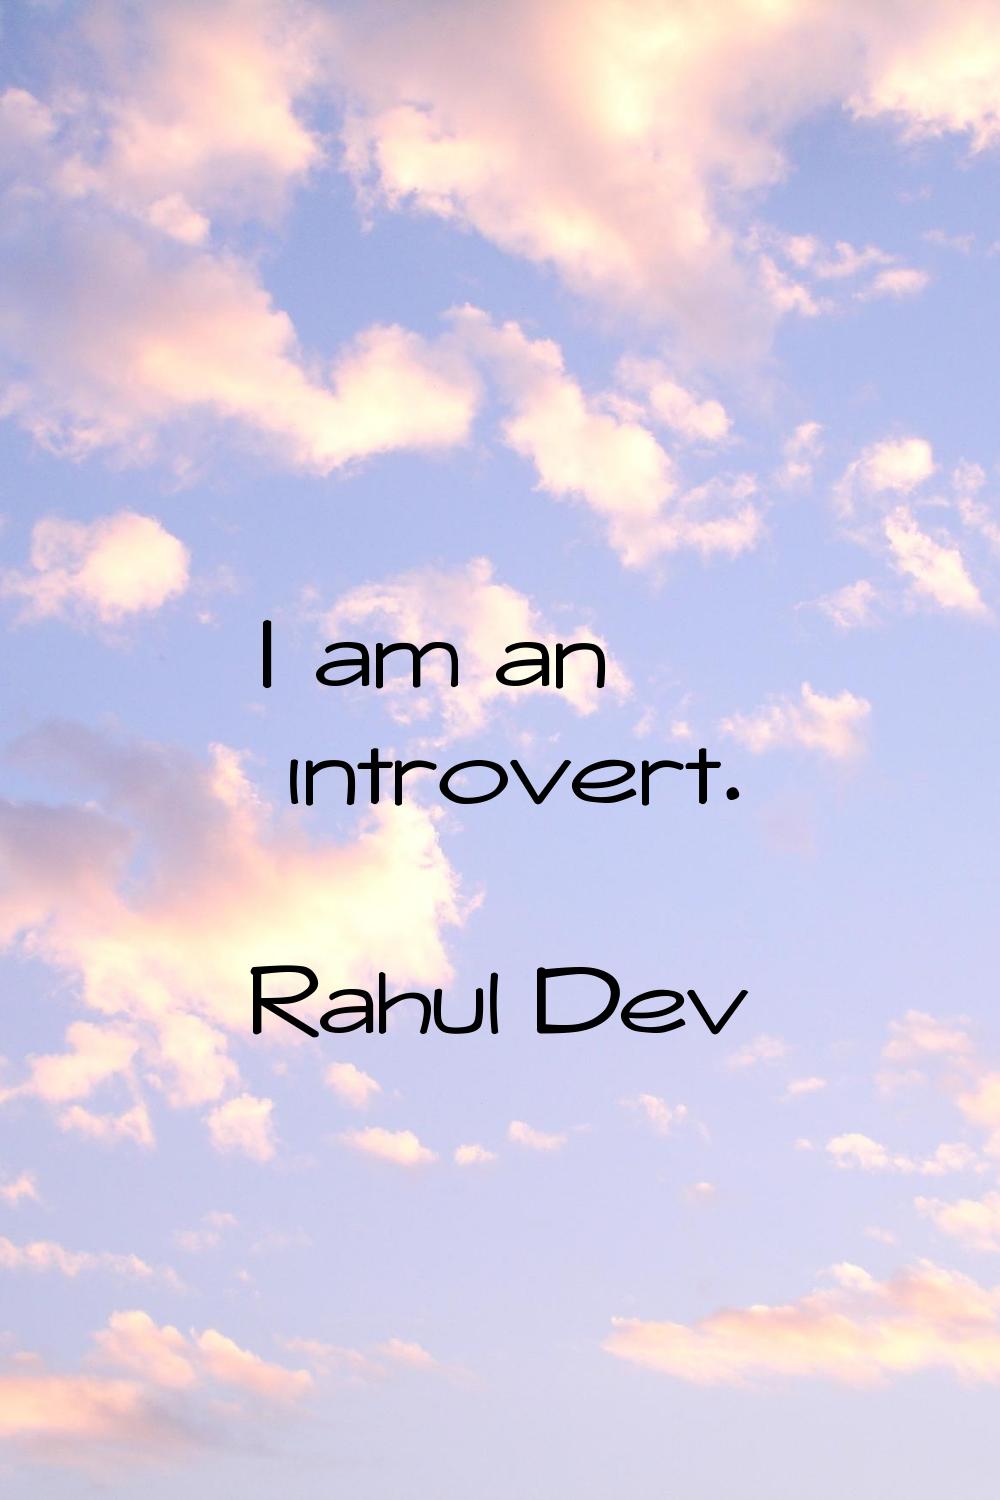 I am an introvert.